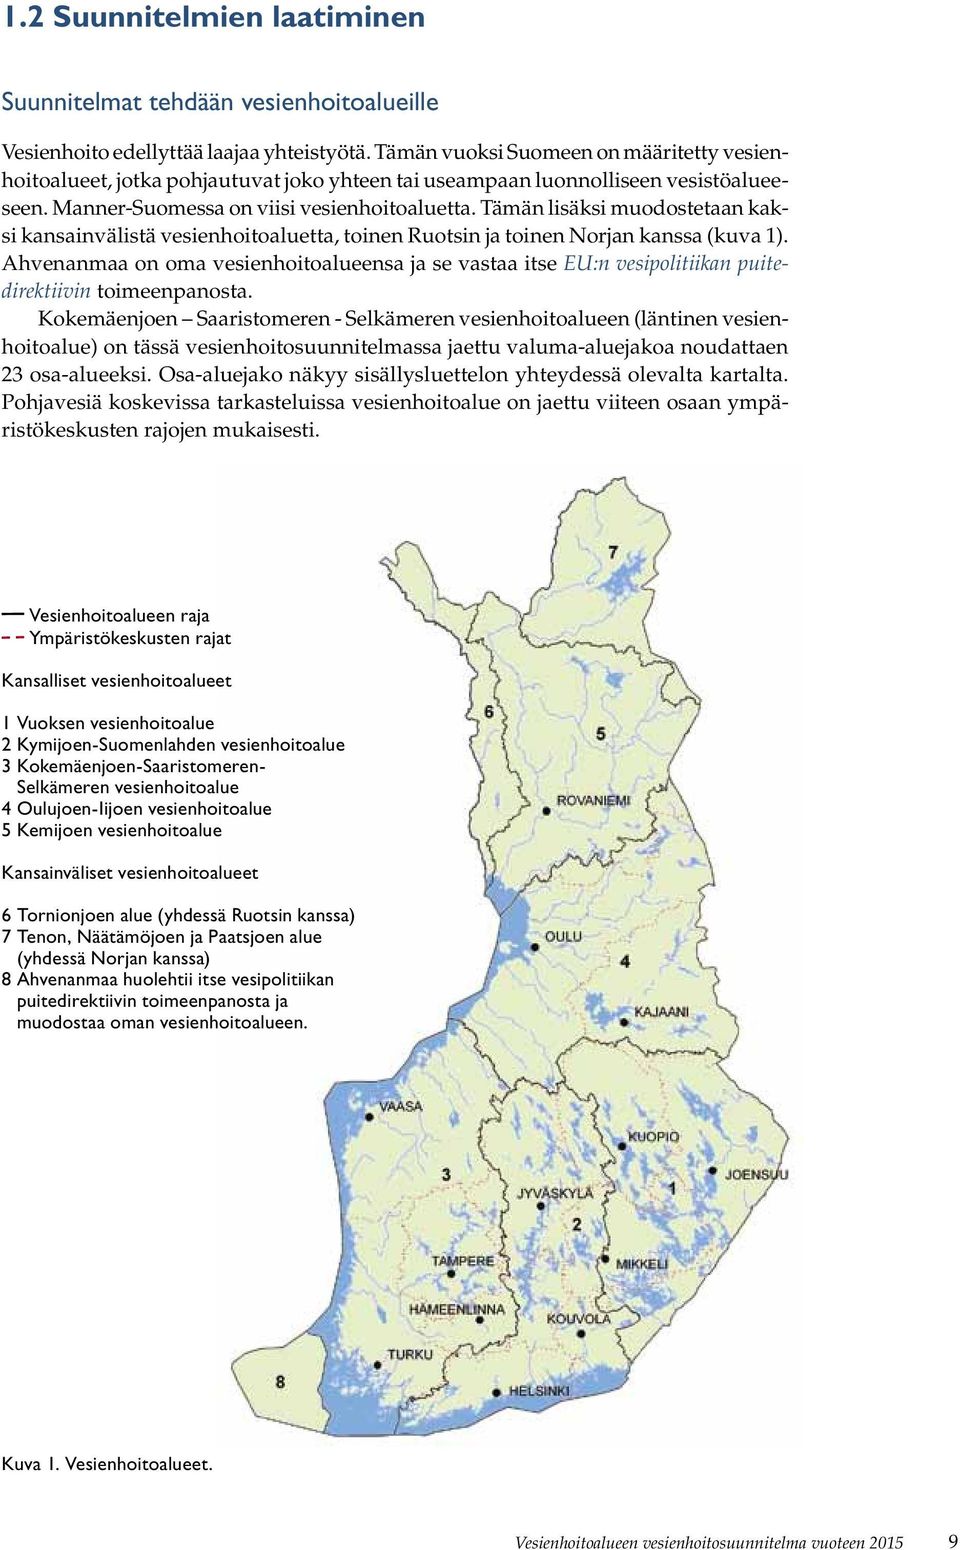 Tämän lisäksi muodostetaan kaksi kansainvälistä vesienhoitoaluetta, toinen Ruotsin ja toinen Norjan kanssa (kuva 1).